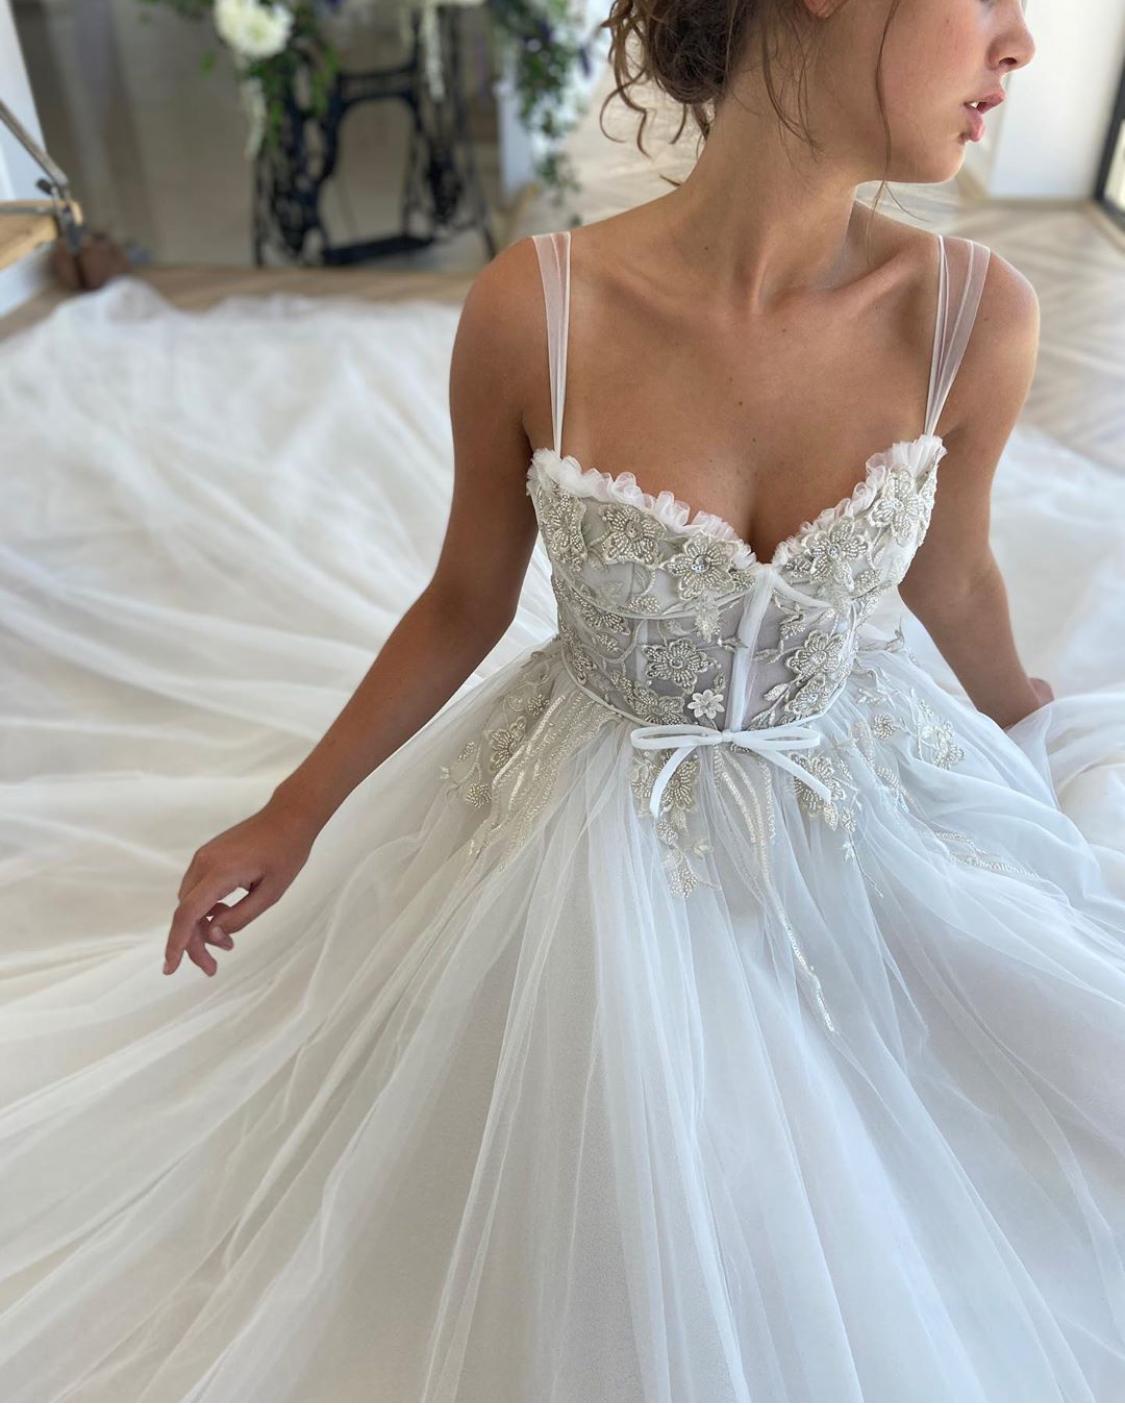 Vinca Enthralling Bridal Gown | Teuta ...